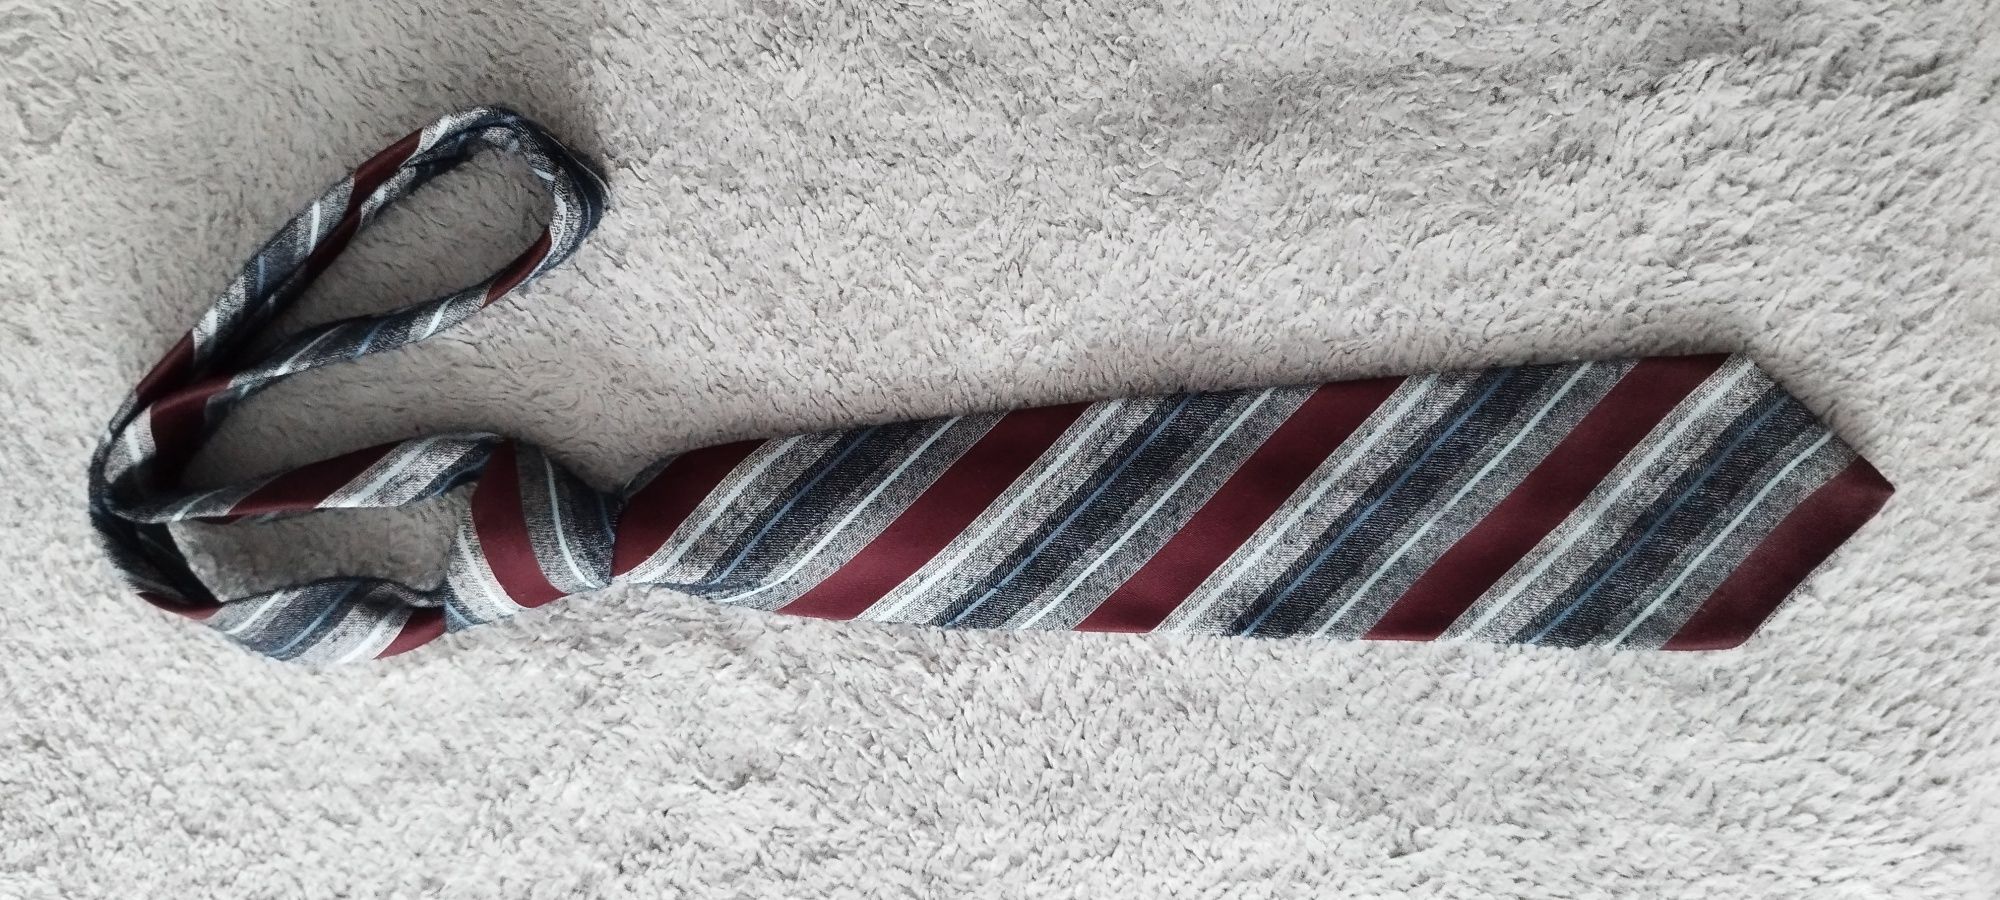 Krawat w paski szaro-bordowy